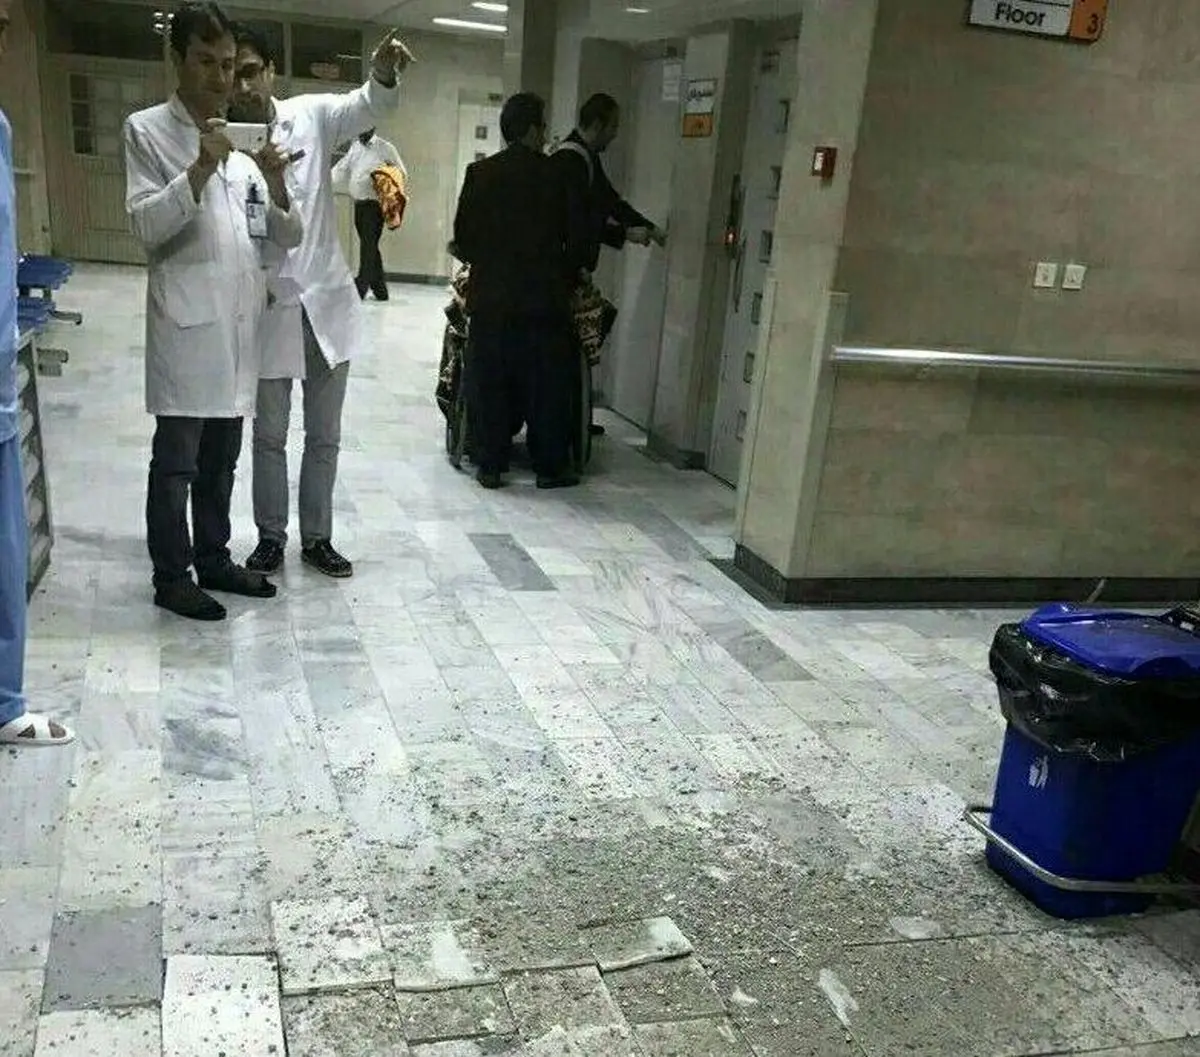 ریزش سقف بیمارستان امام خمینی (ره) ارومیه پس از وقوع زلزله + عکس 